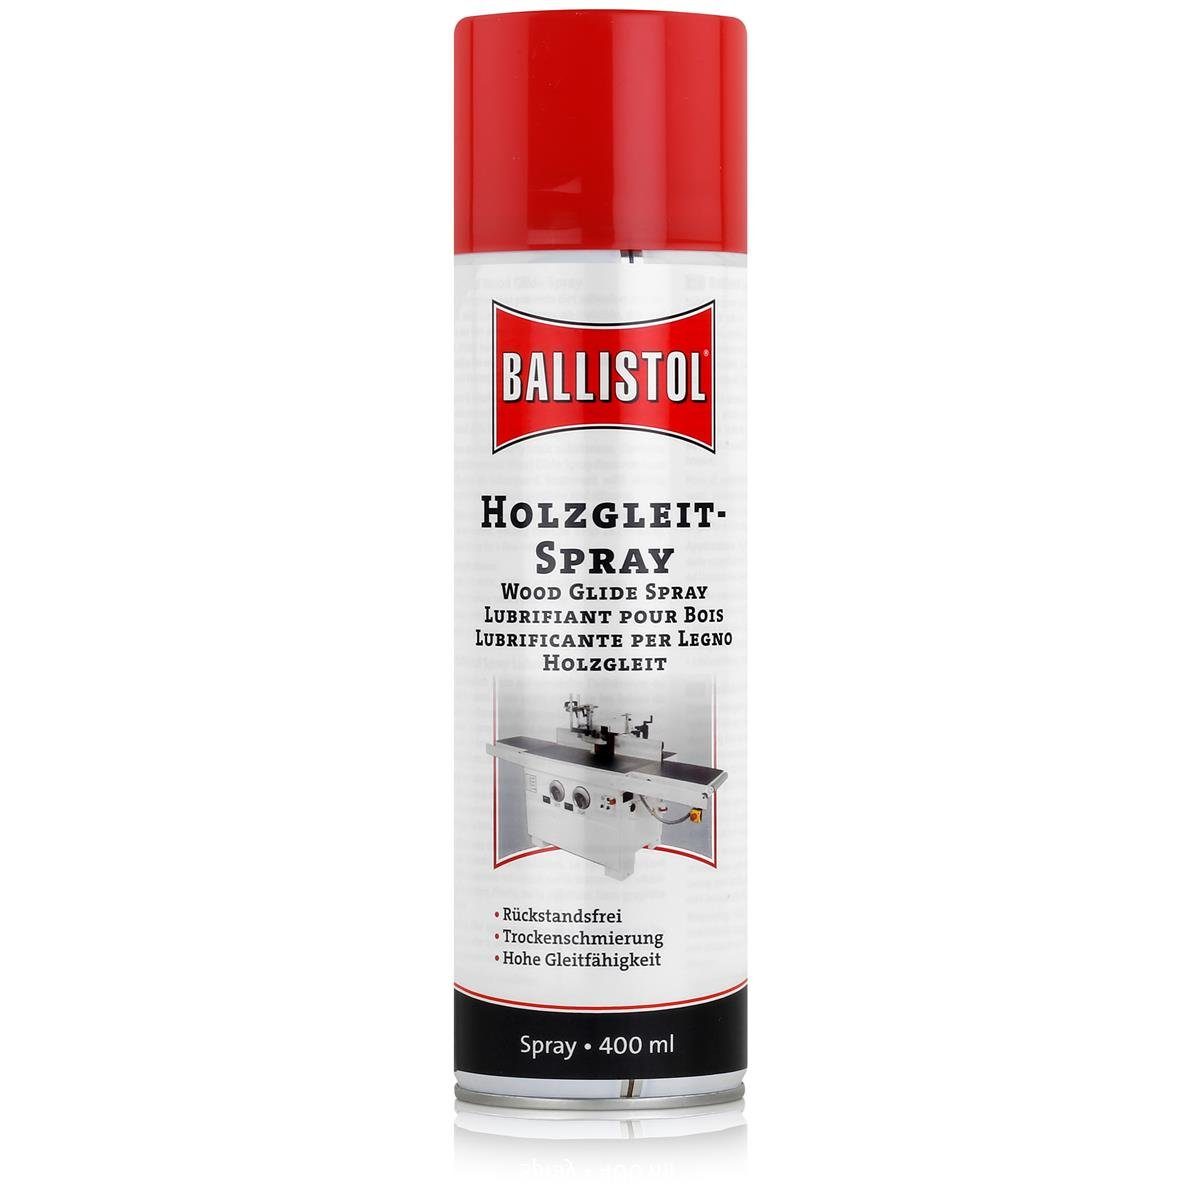 Ballistol Multifunktionsöl Ballistol Holzgleit Spray 400ml - Trockenschmierung, Rückstandsfrei (1